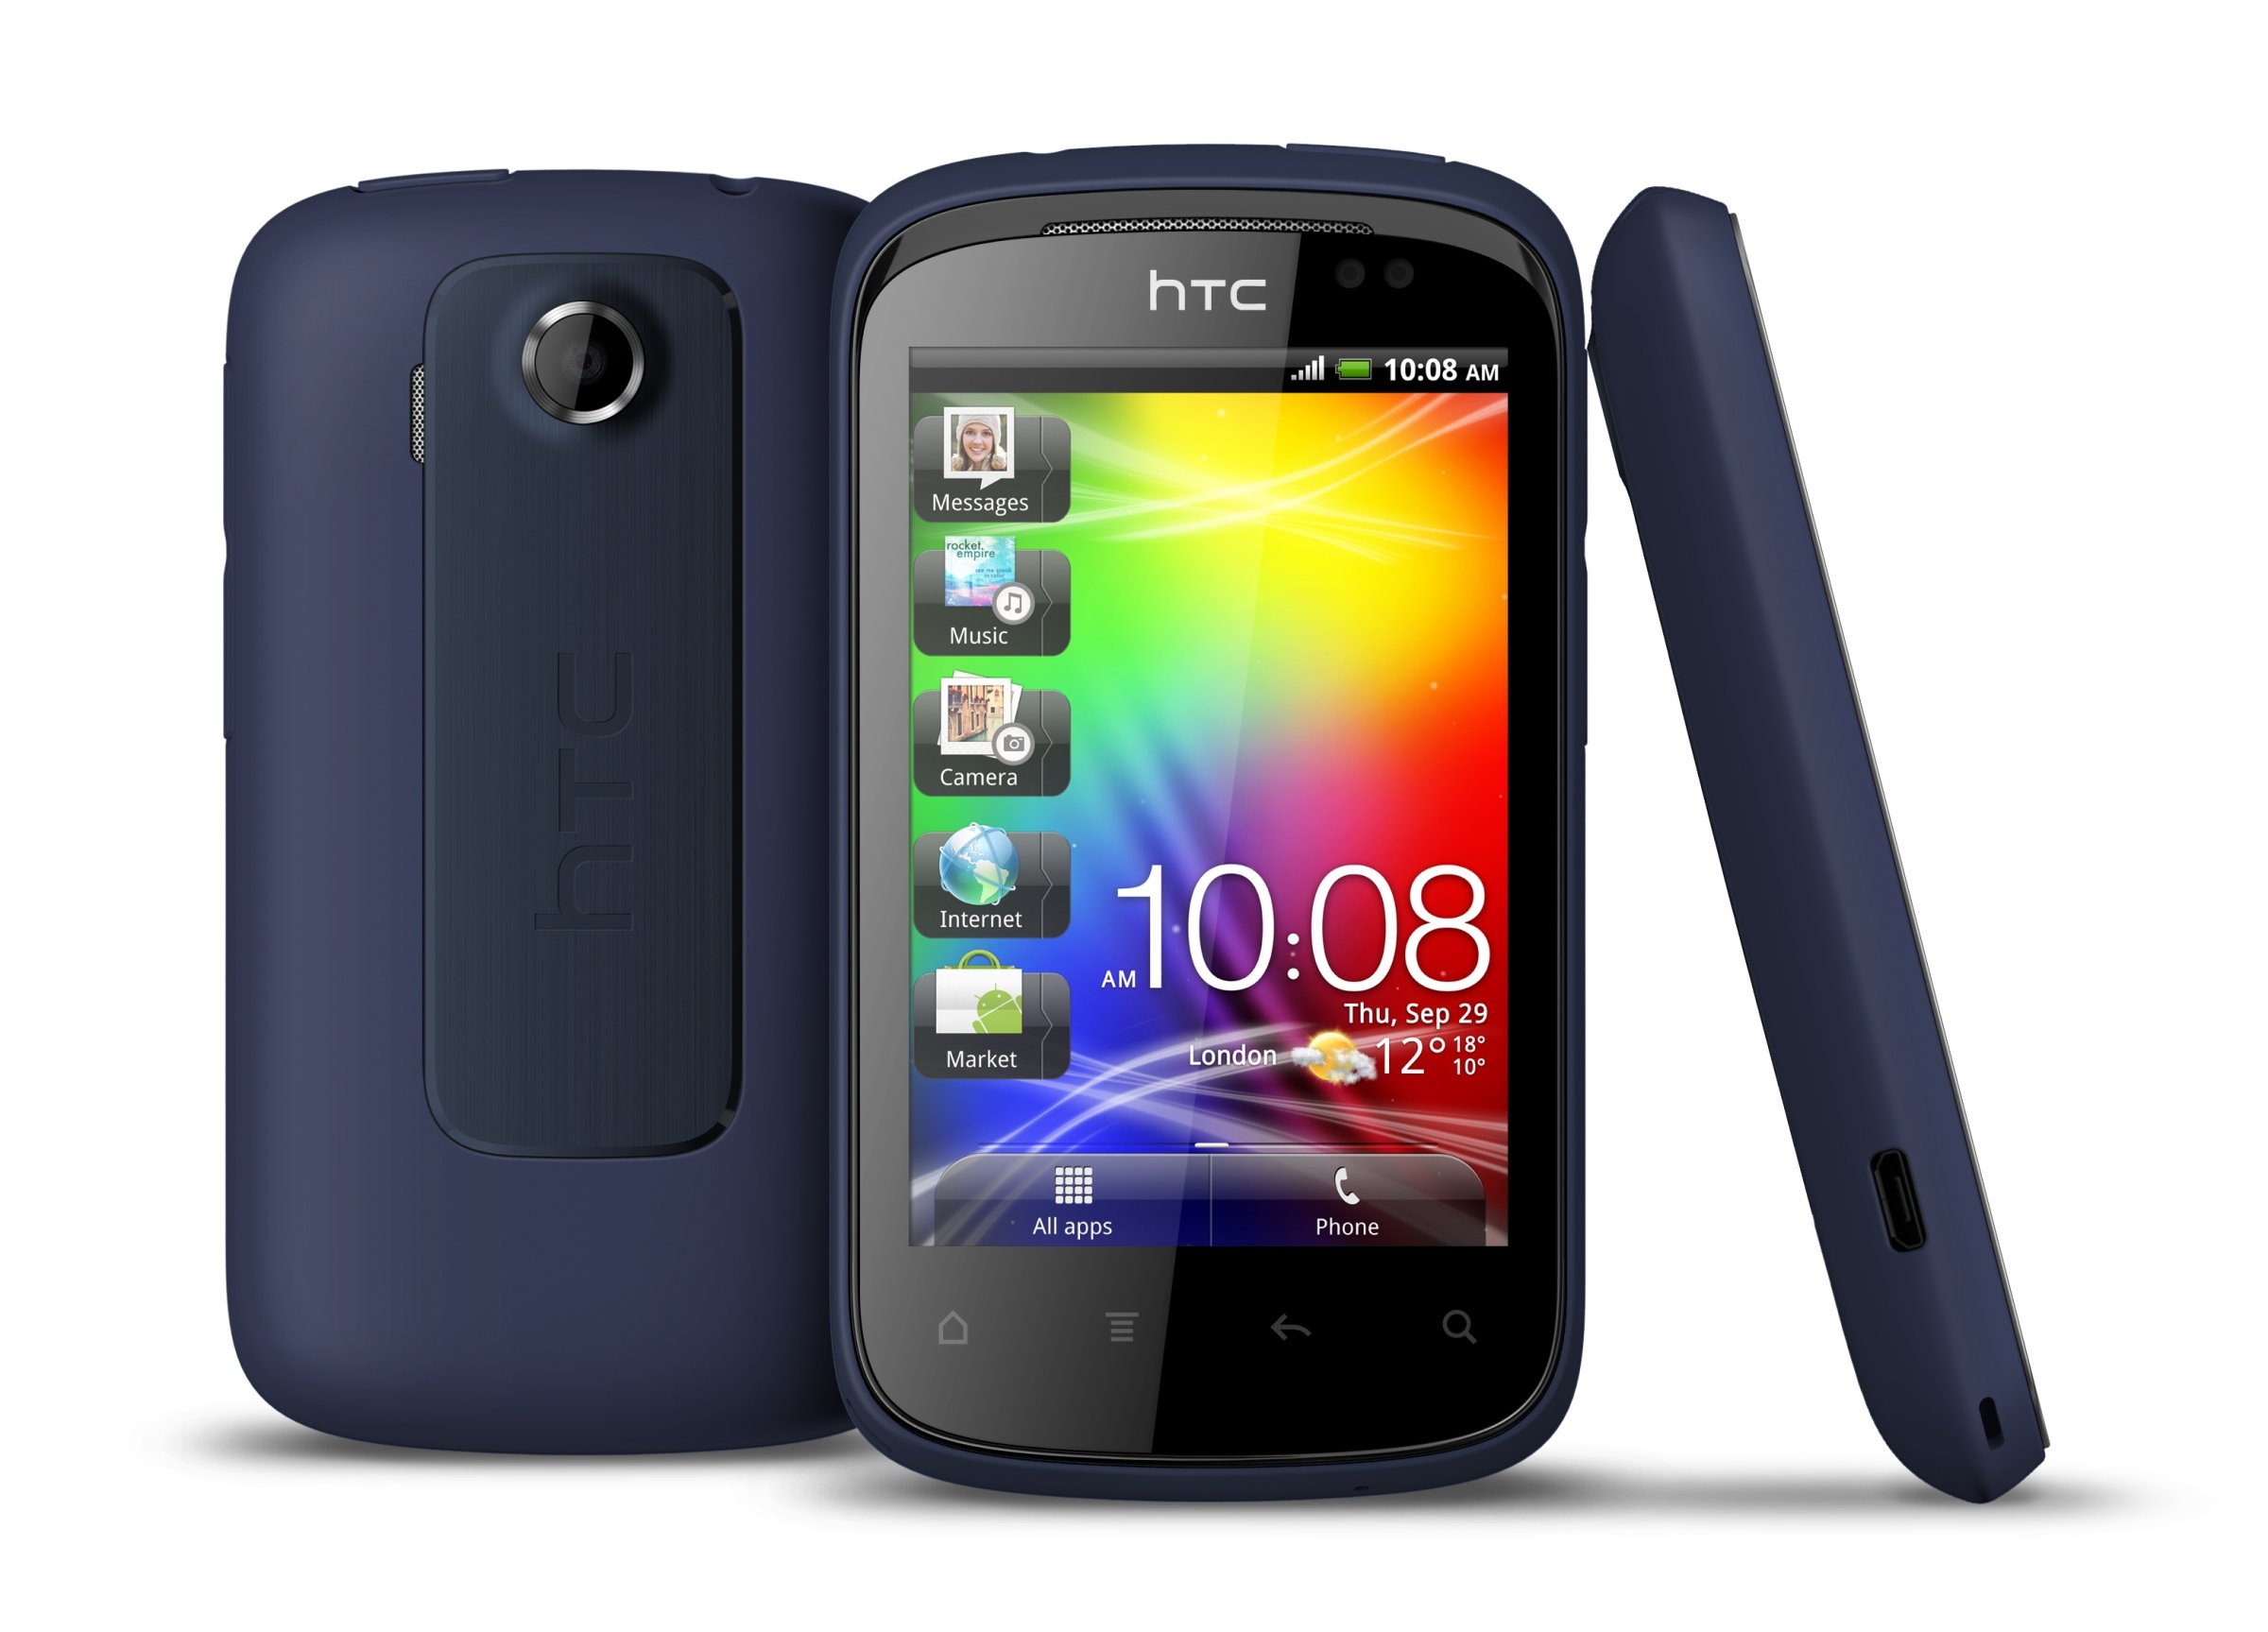  الروم الرسمي لجهاز HTC Explorer  الاسم التطوير Pico |